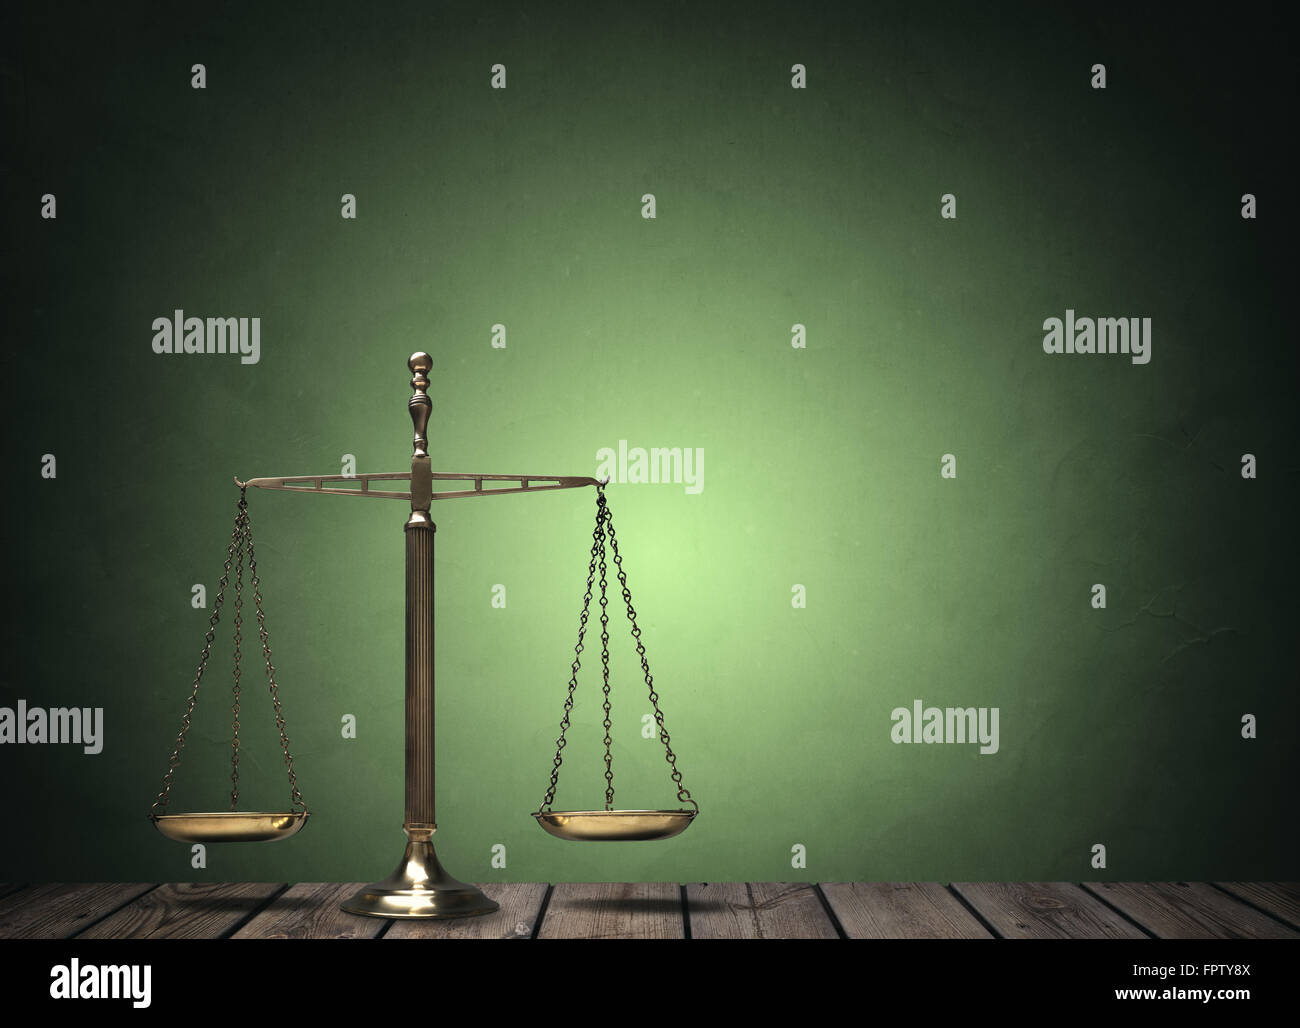 La ley amplía el concepto de escritorio de madera para la justicia y la igualdad Foto de stock